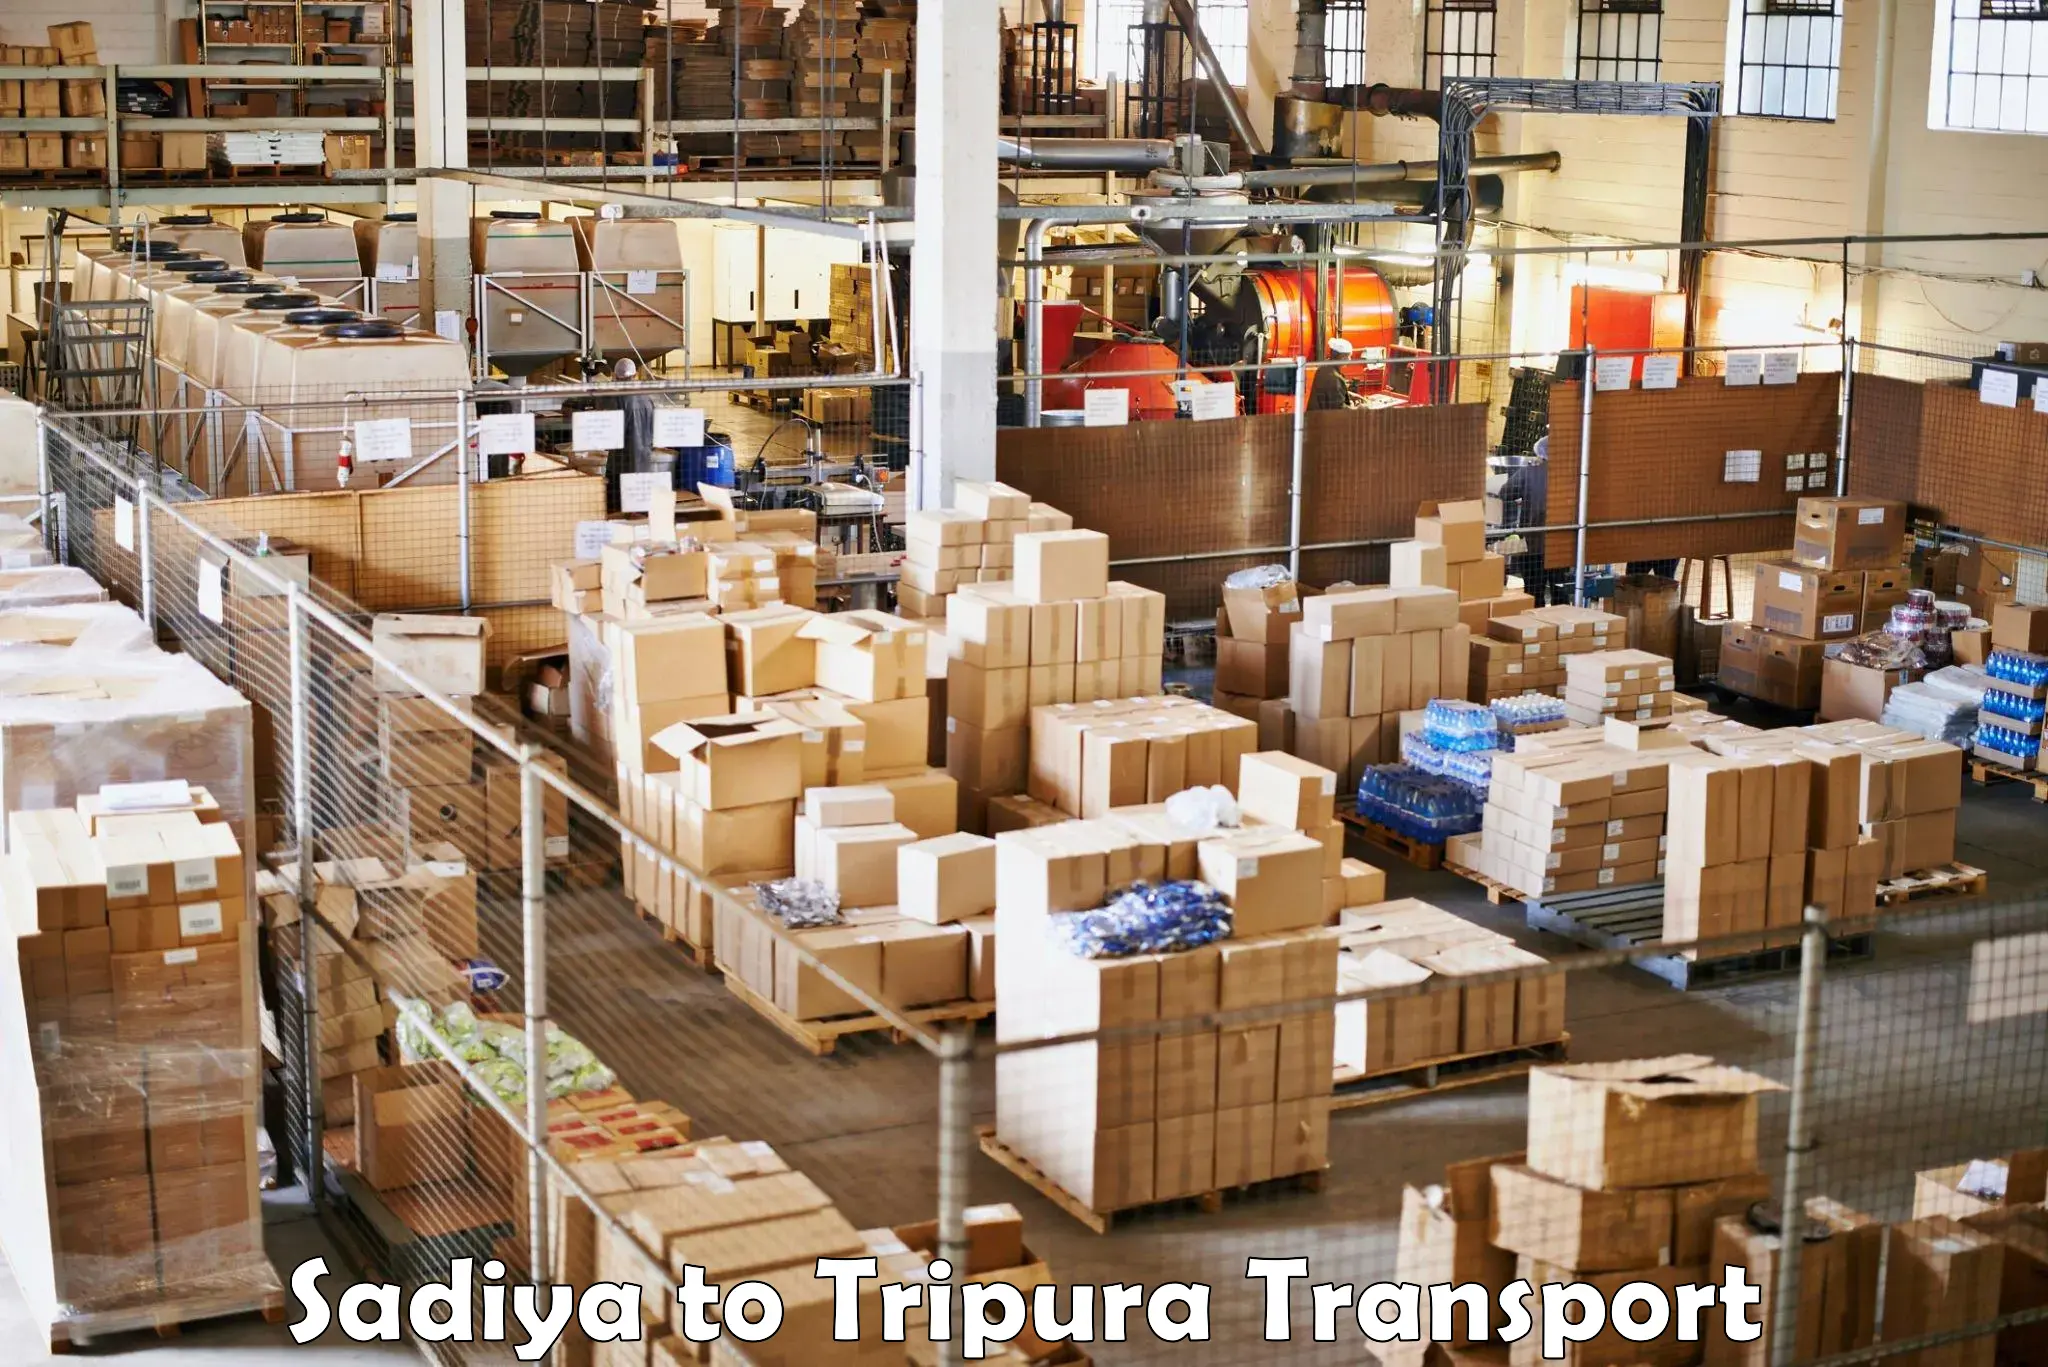 Online transport booking Sadiya to Udaipur Tripura